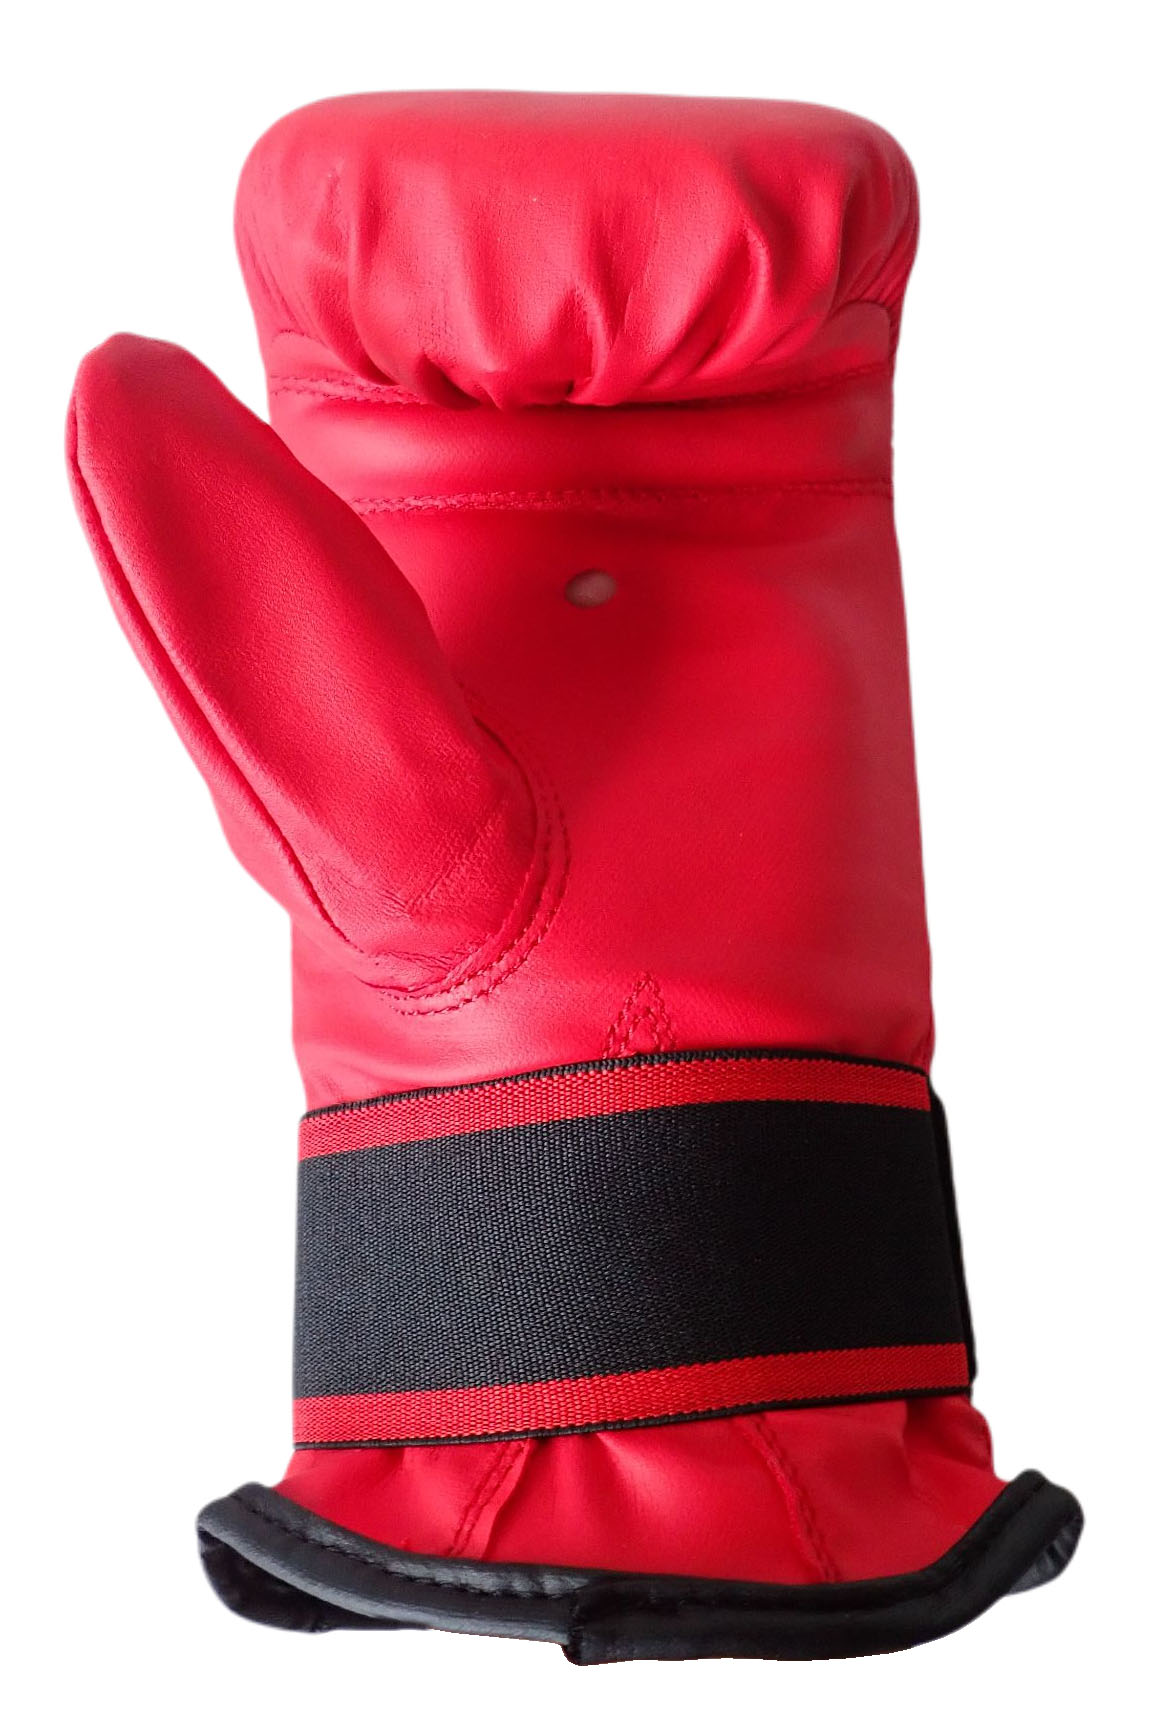 Boxerské rukavice pytlovky, vel. XS